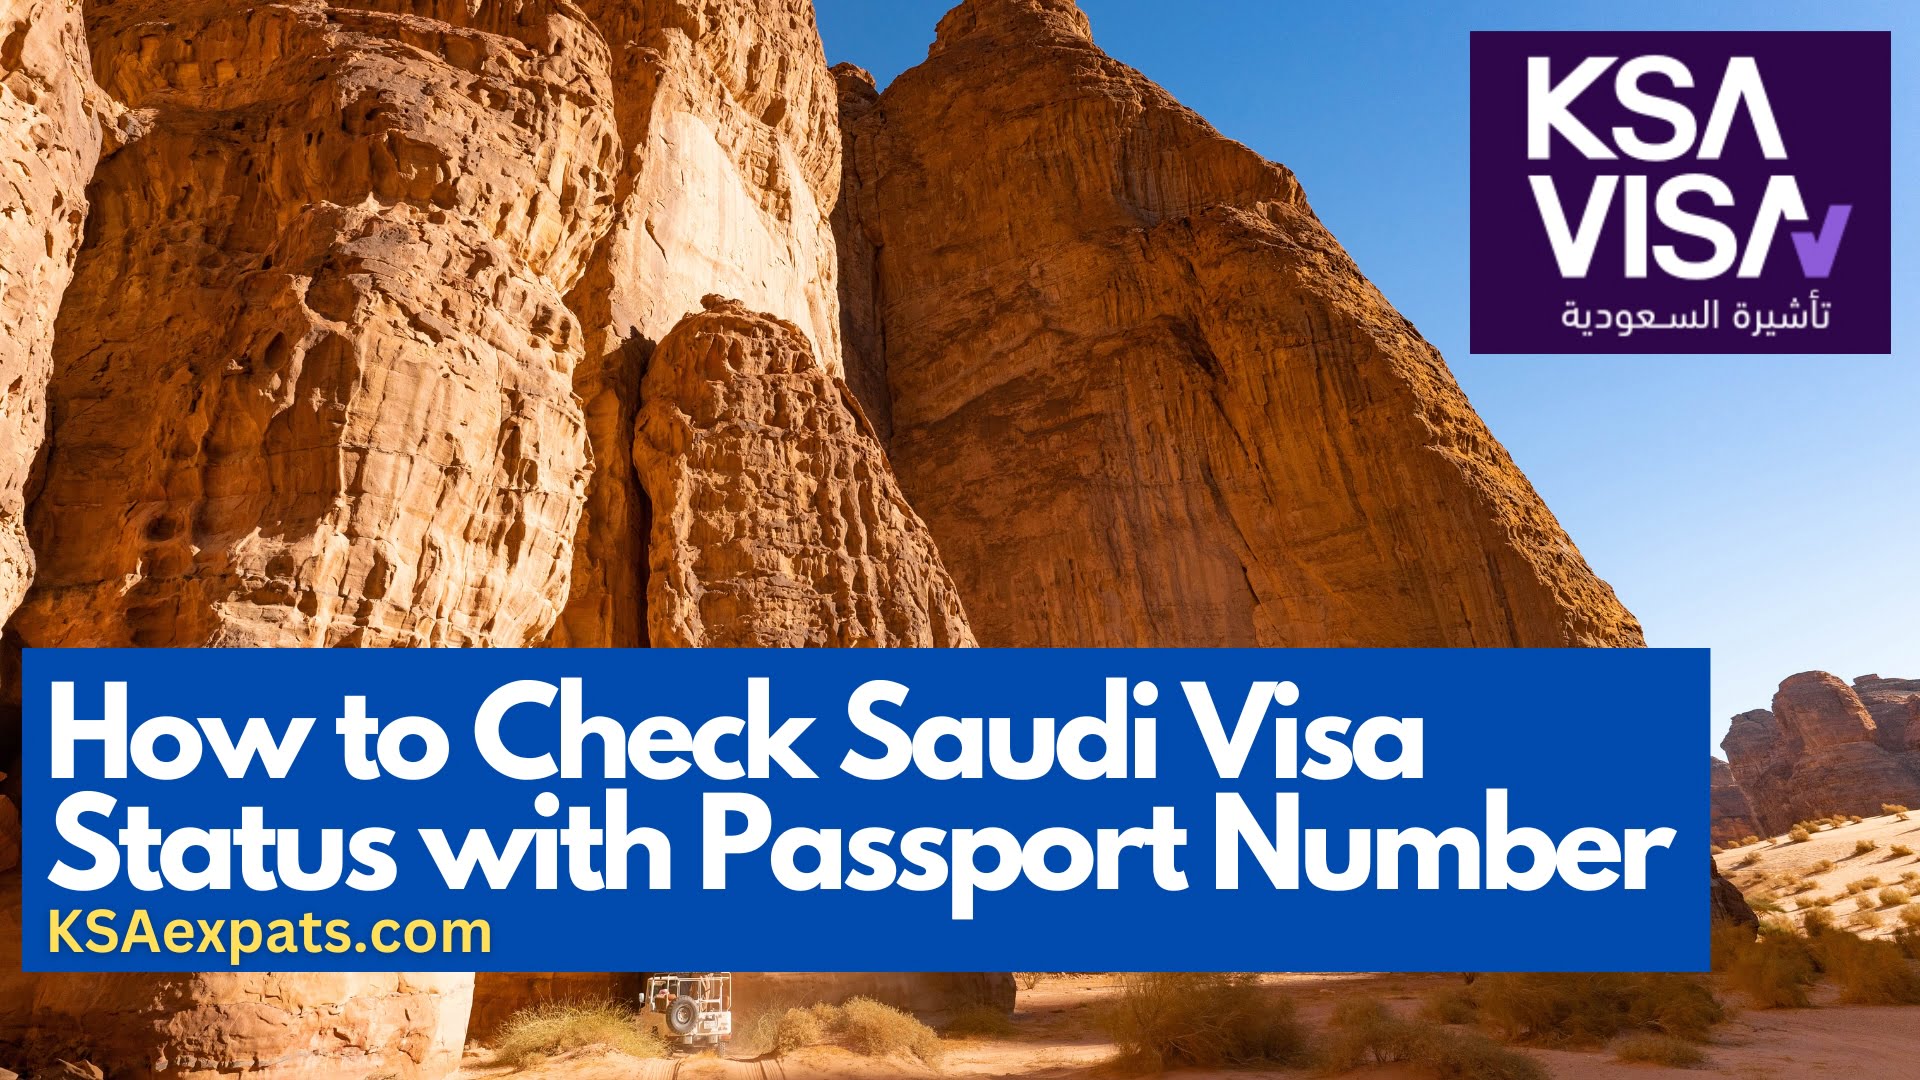 Check Saudi Visa Status